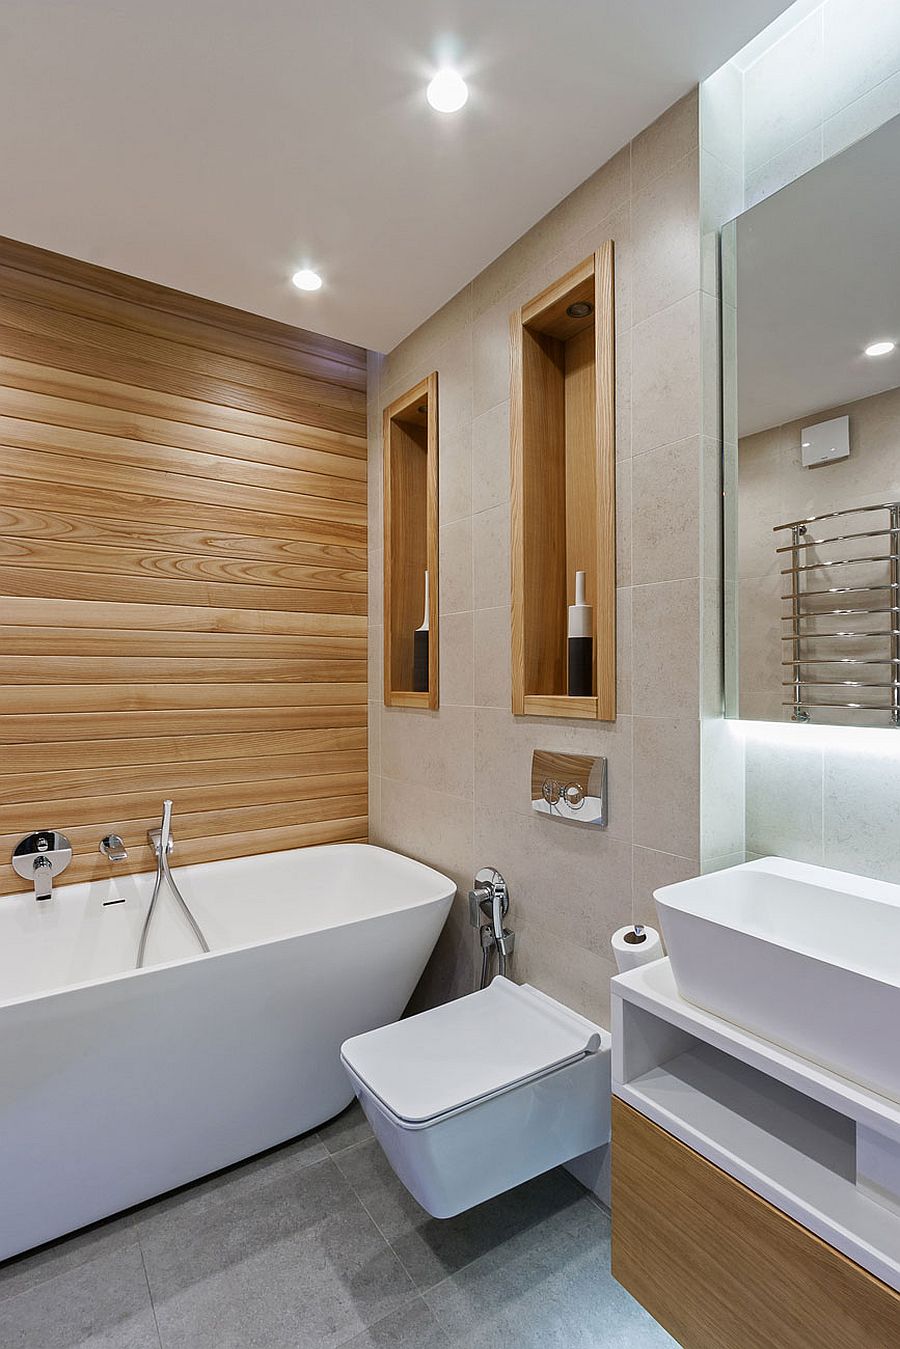 Small and elegant modern bathroom with bathtub